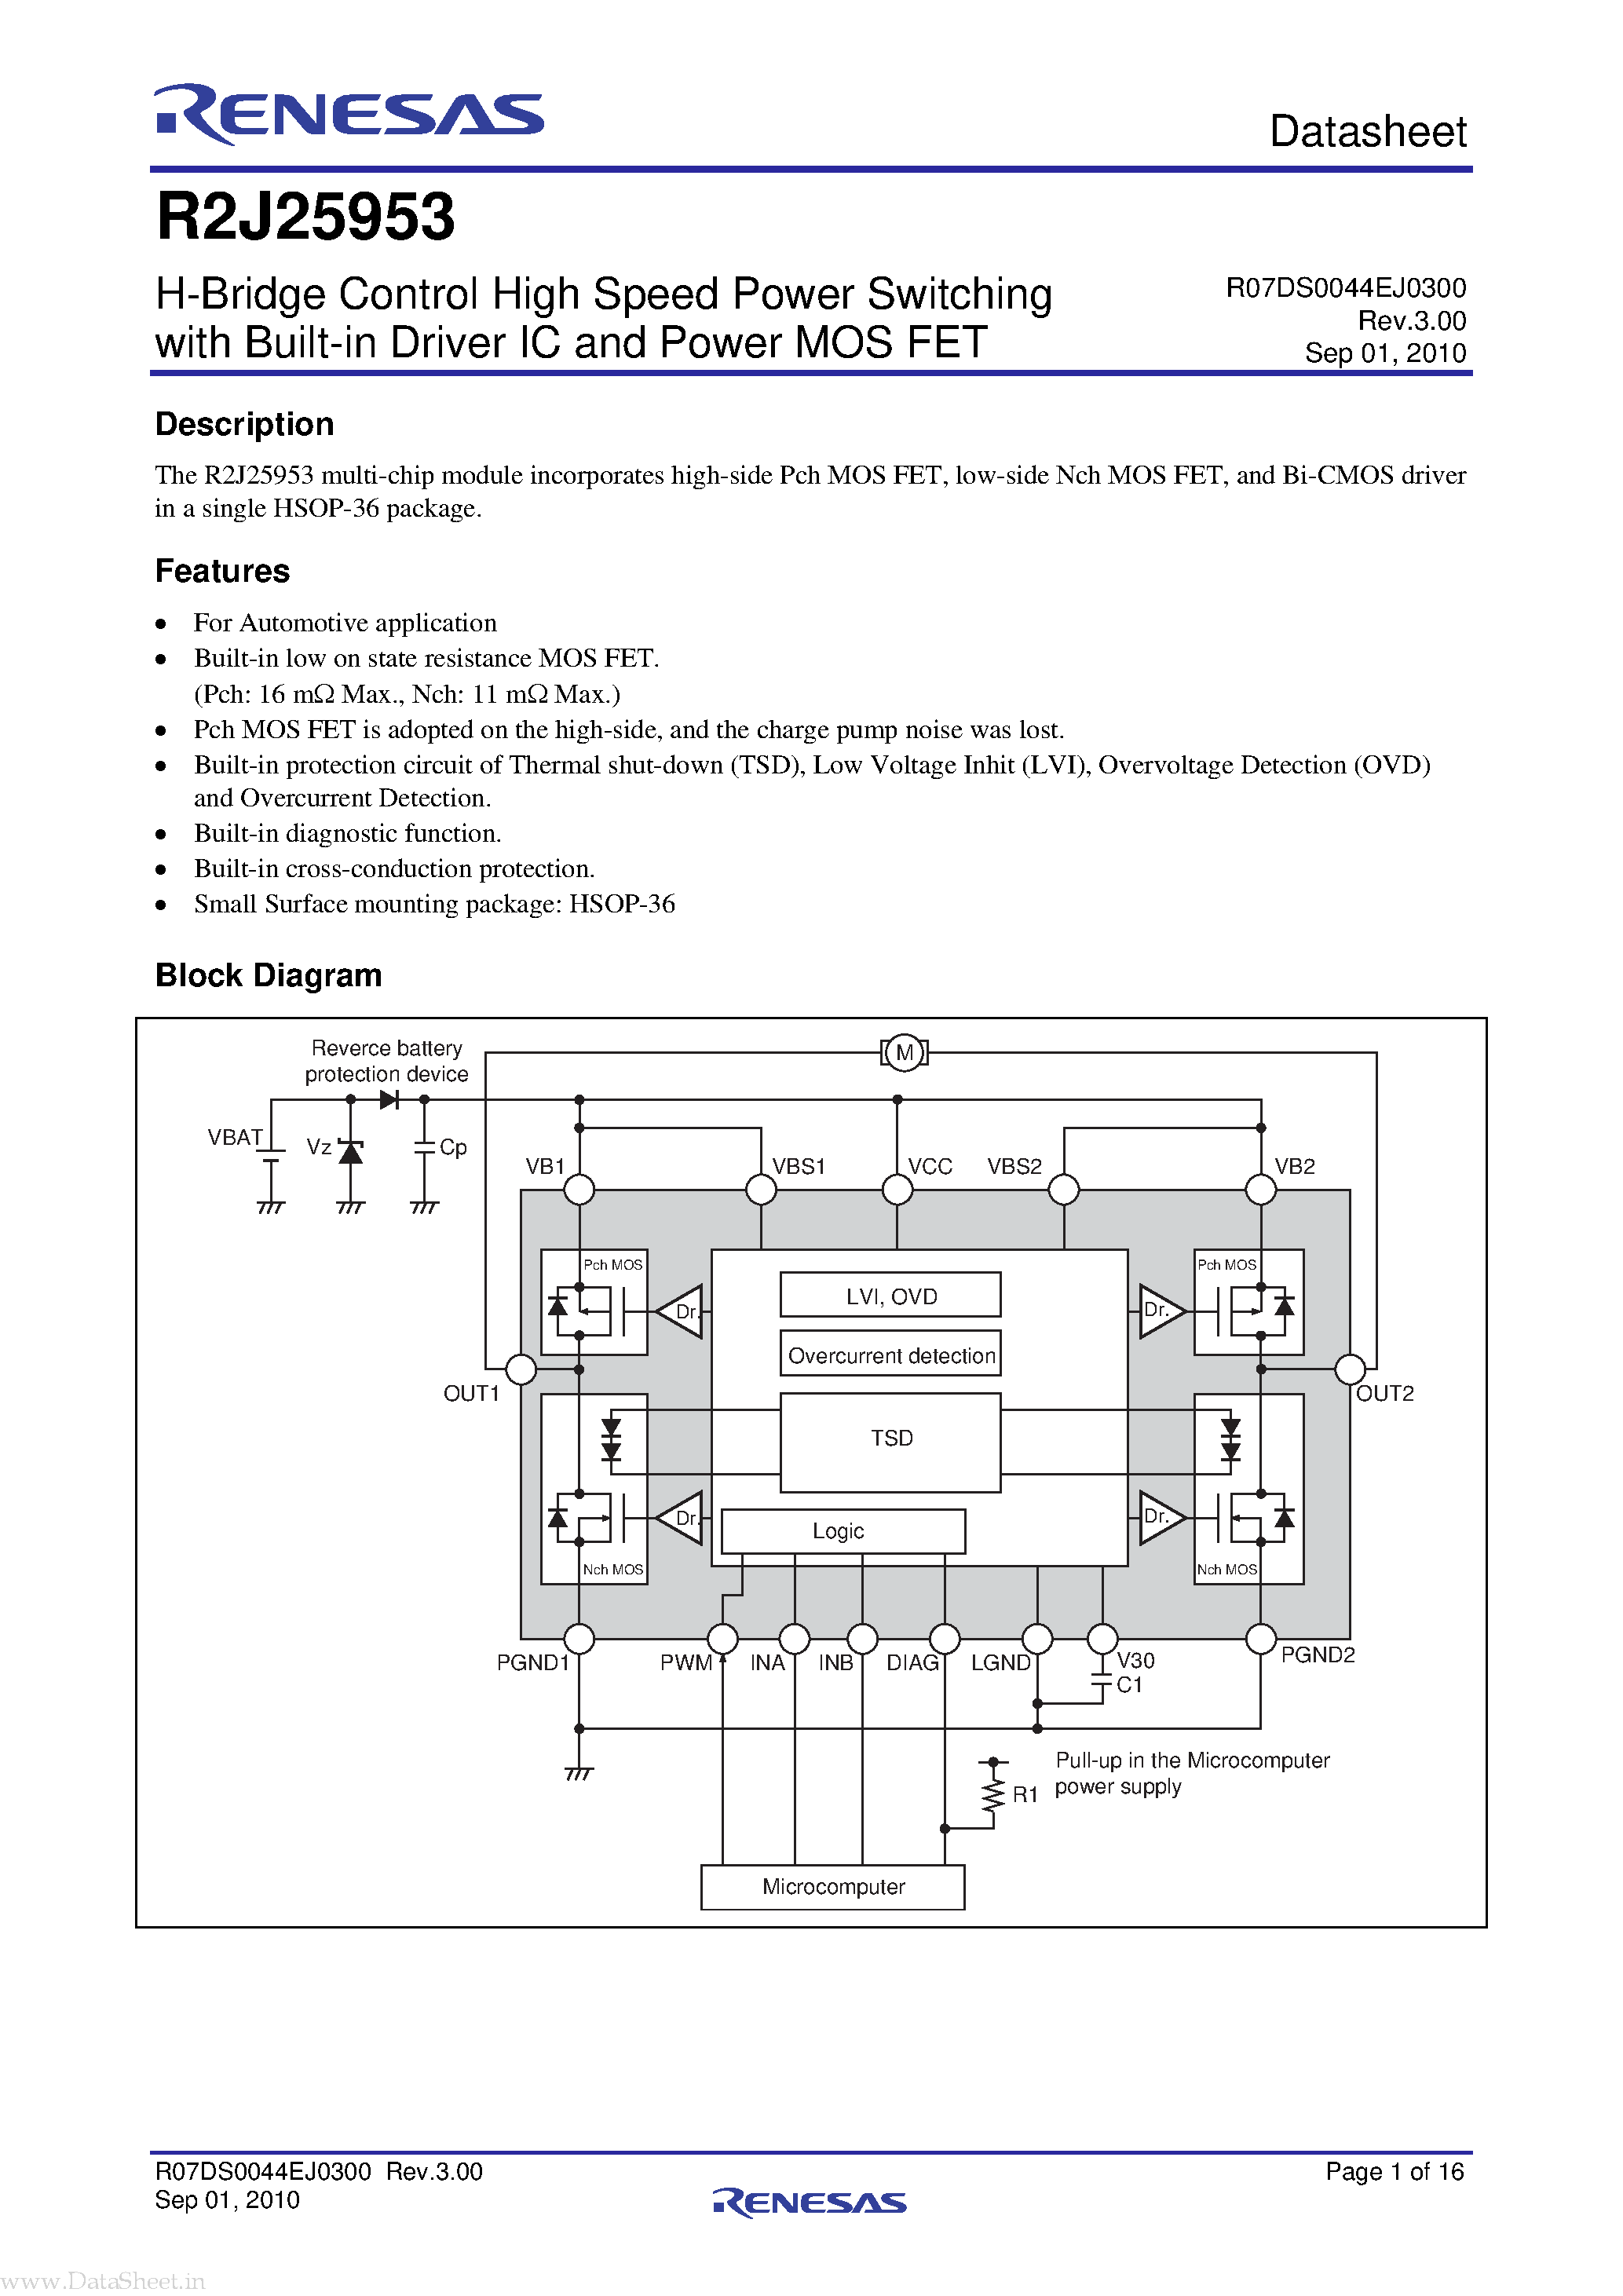 Datasheet R2J25953 - H-Bridge Control High Speed Power Switching page 1